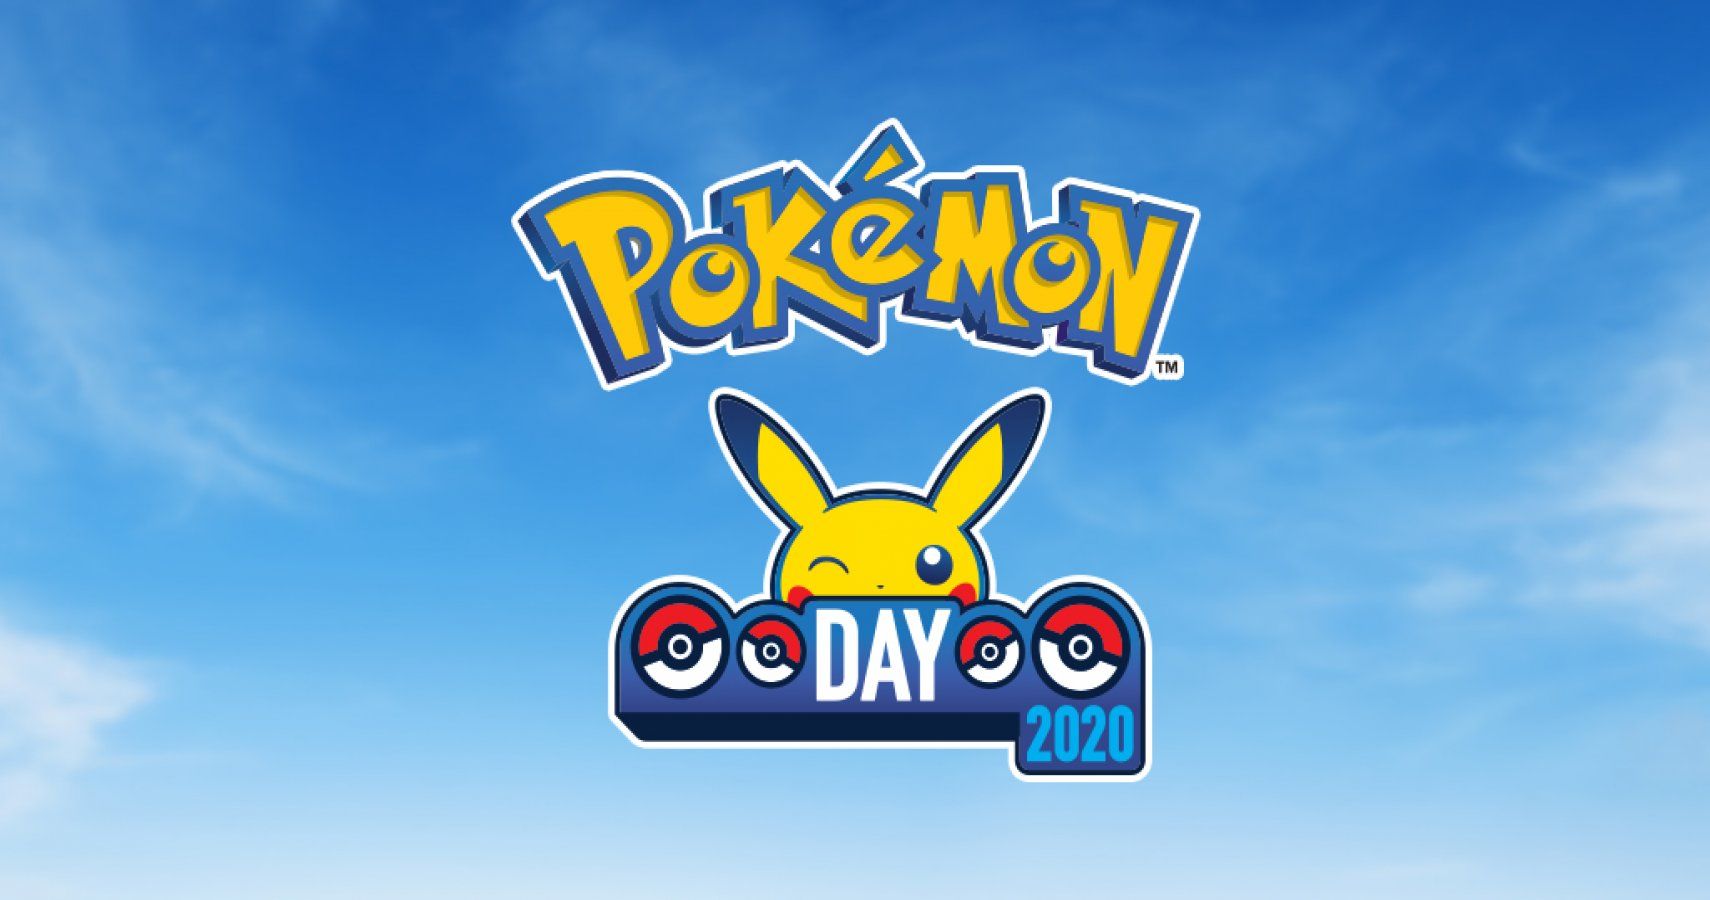 Celebrate Pokémon Day with Pokémon Go on February 27th